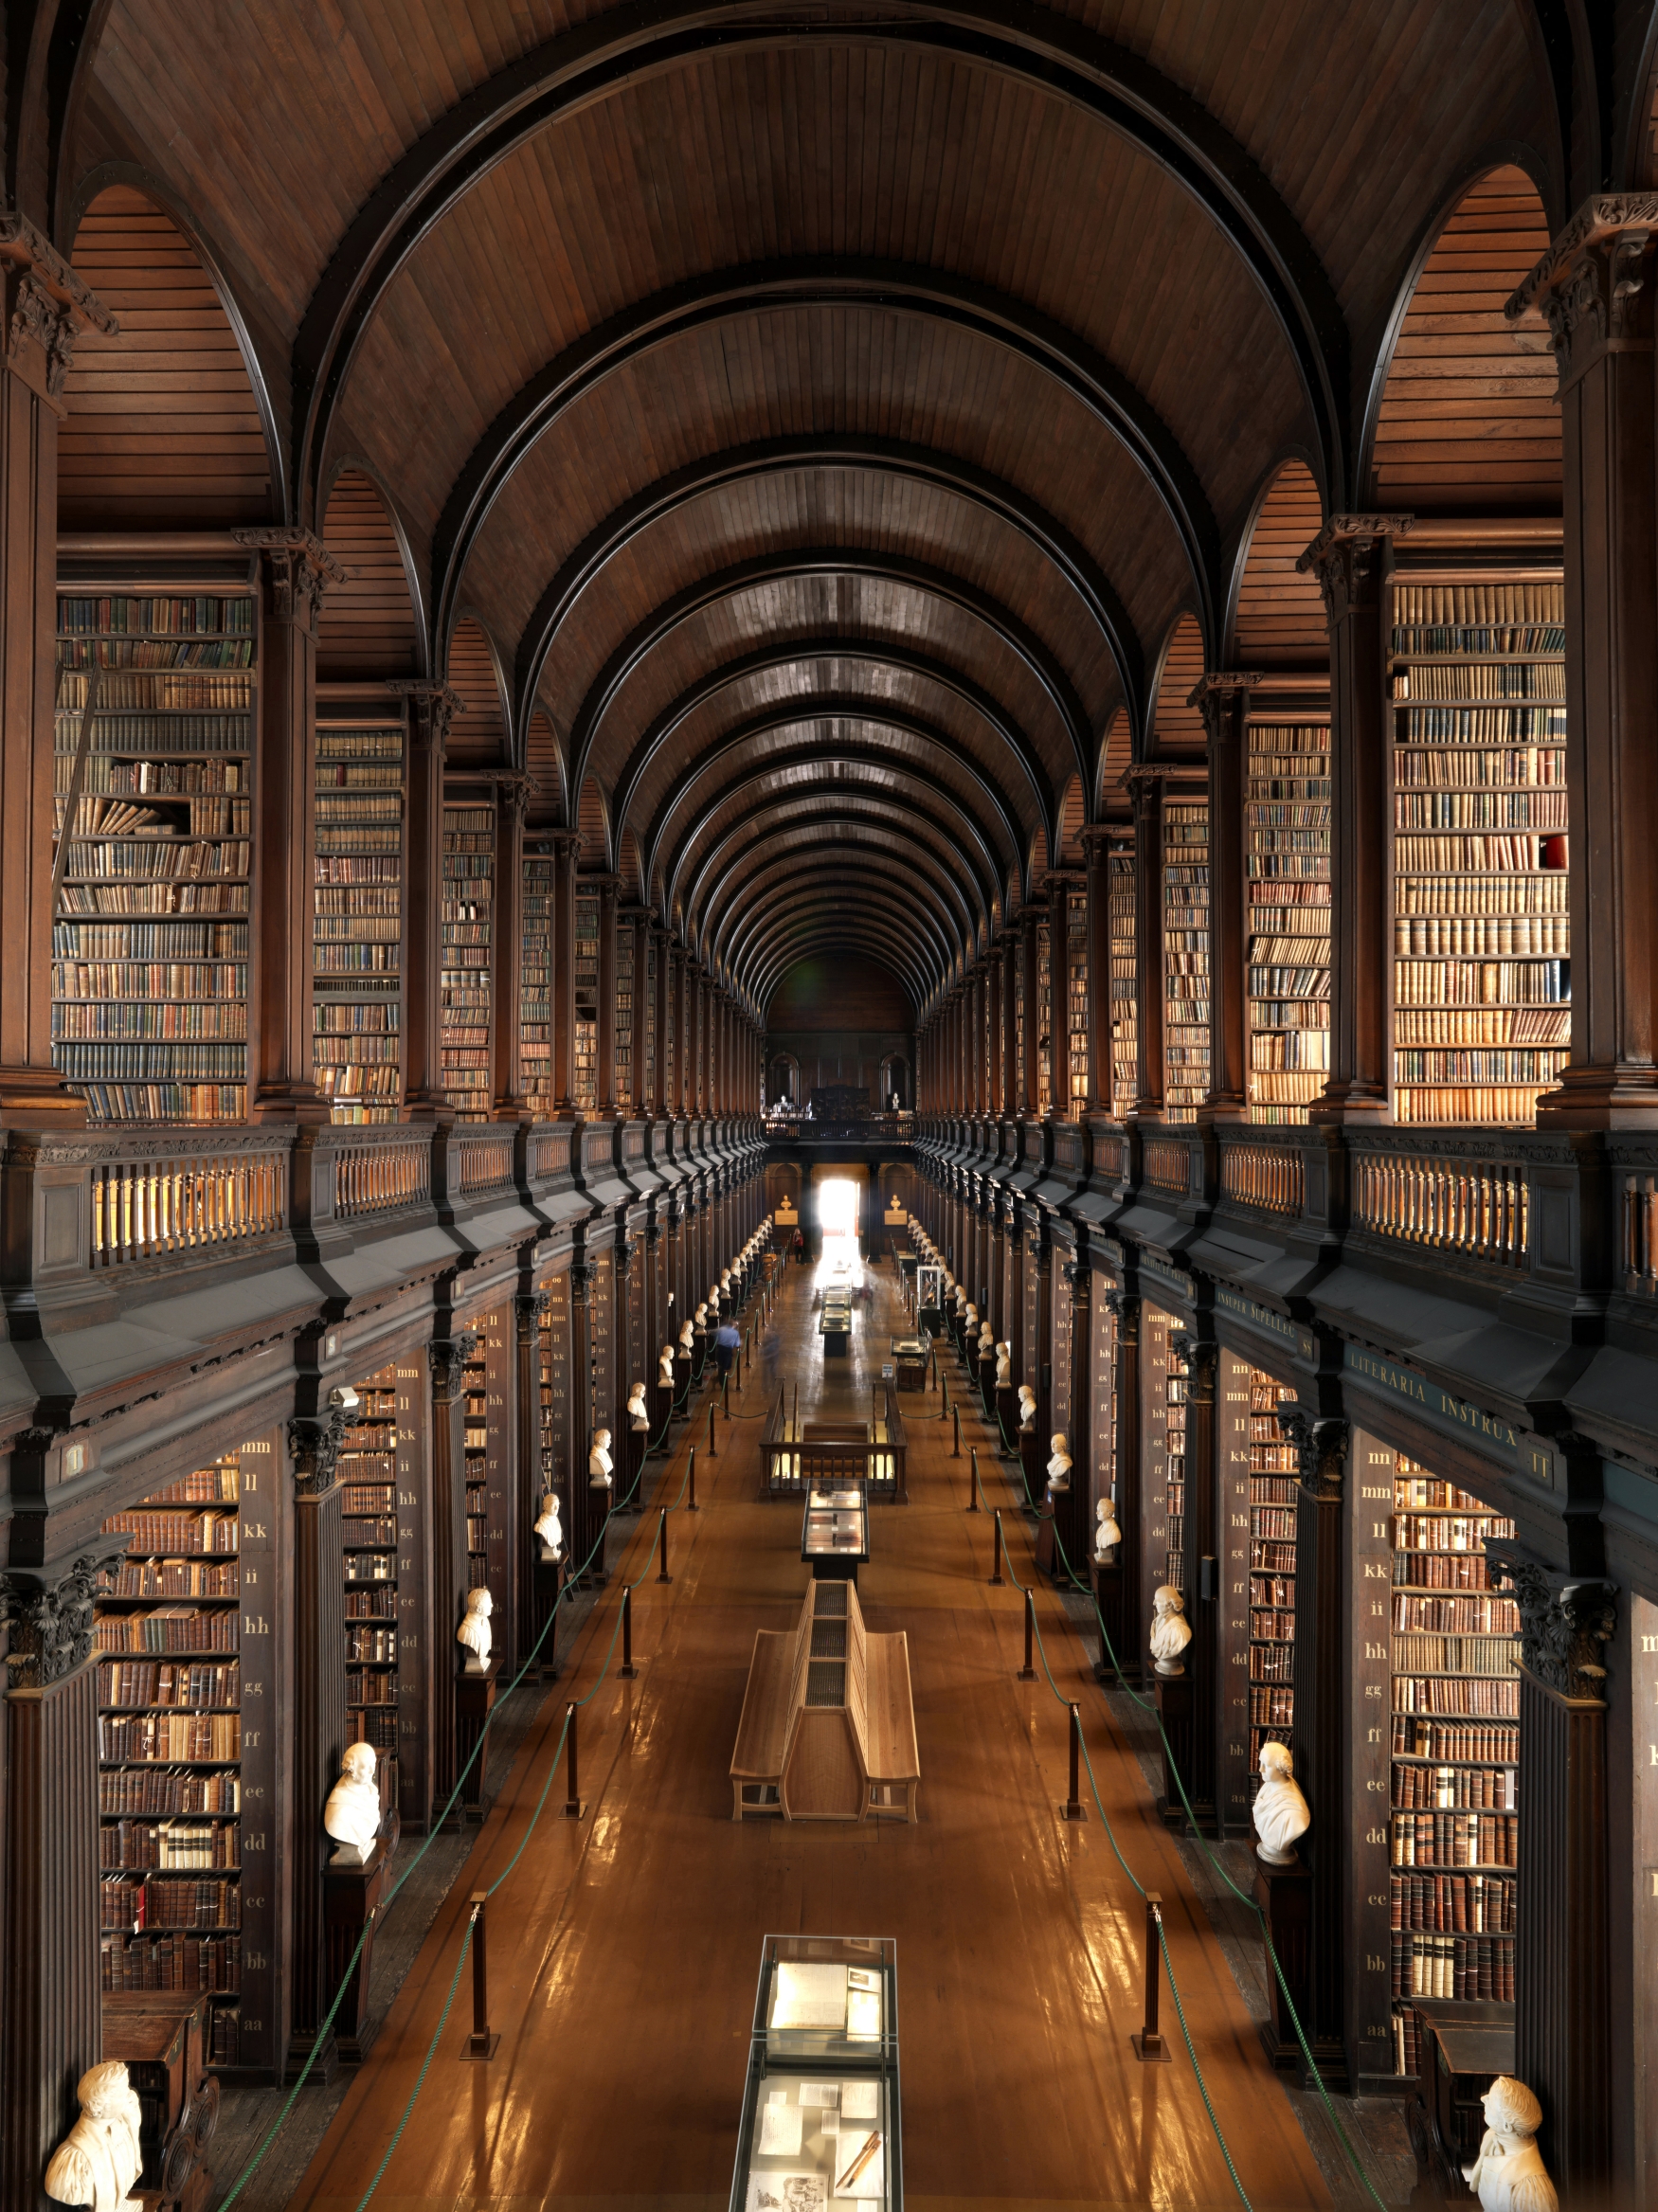 Cc library. Тринити колледж Дублин. Библиотека Тринити-колледжа, Дублин, Ирландия. Библиотека Тринити-колледжа в Дублине. Тринити-колледж в Дублине, Ирландия.